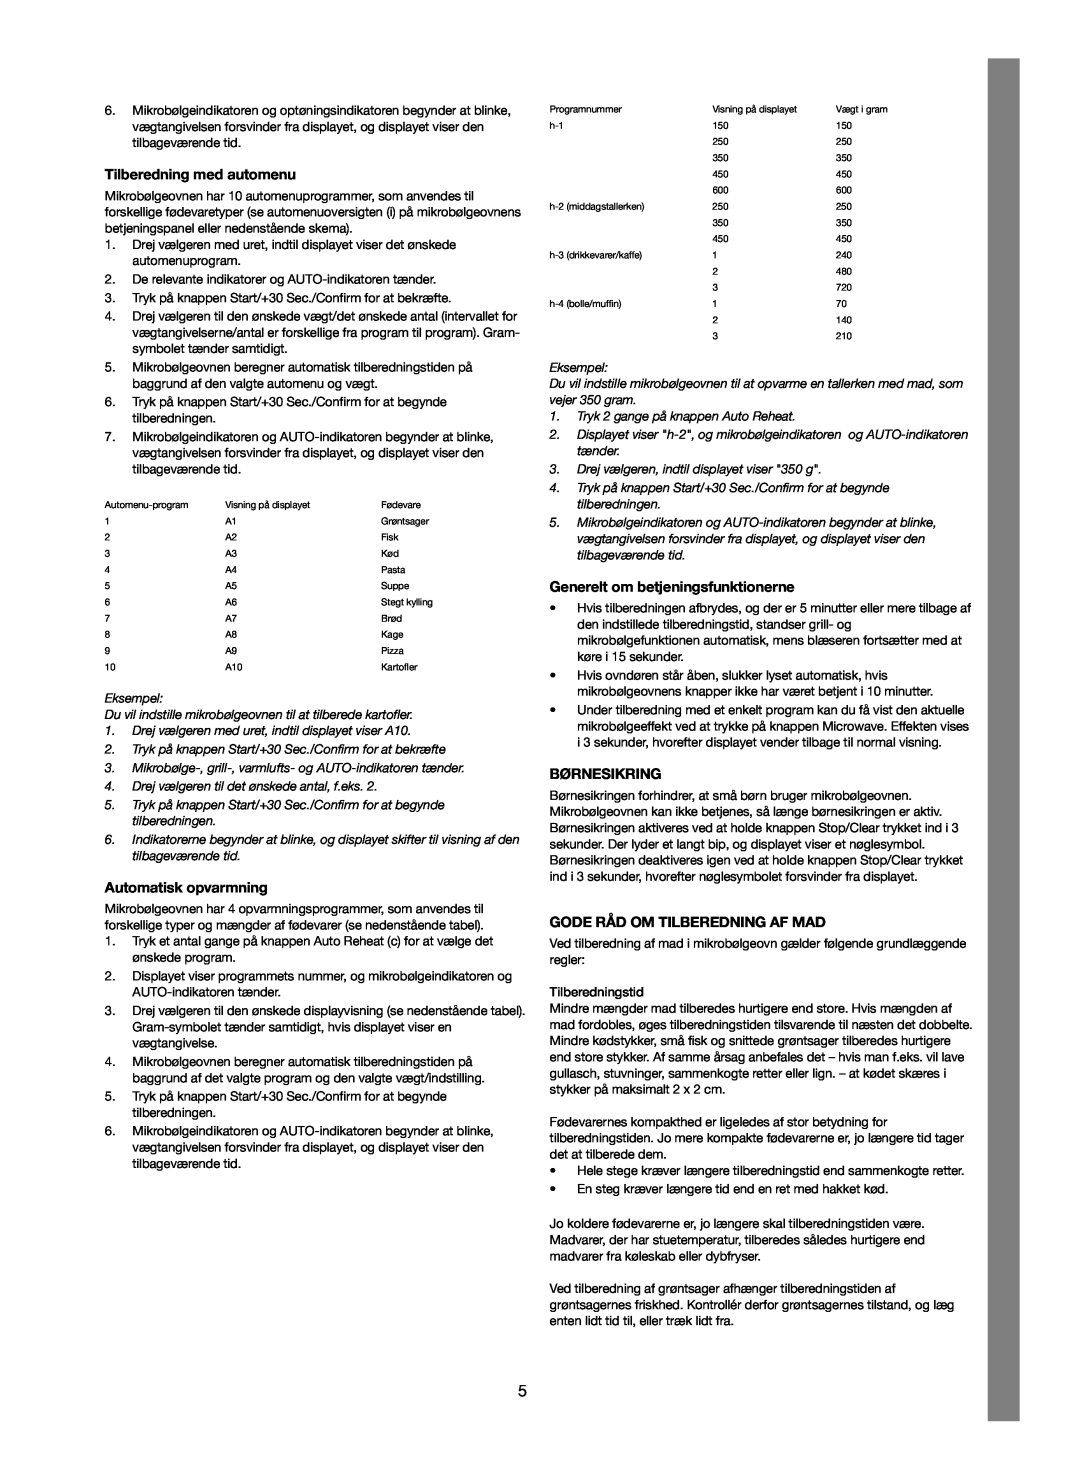 Melissa 253-012 manual Tilberedning med automenu, Automatisk opvarmning, Generelt om betjeningsfunktionerne, Børnesikring 